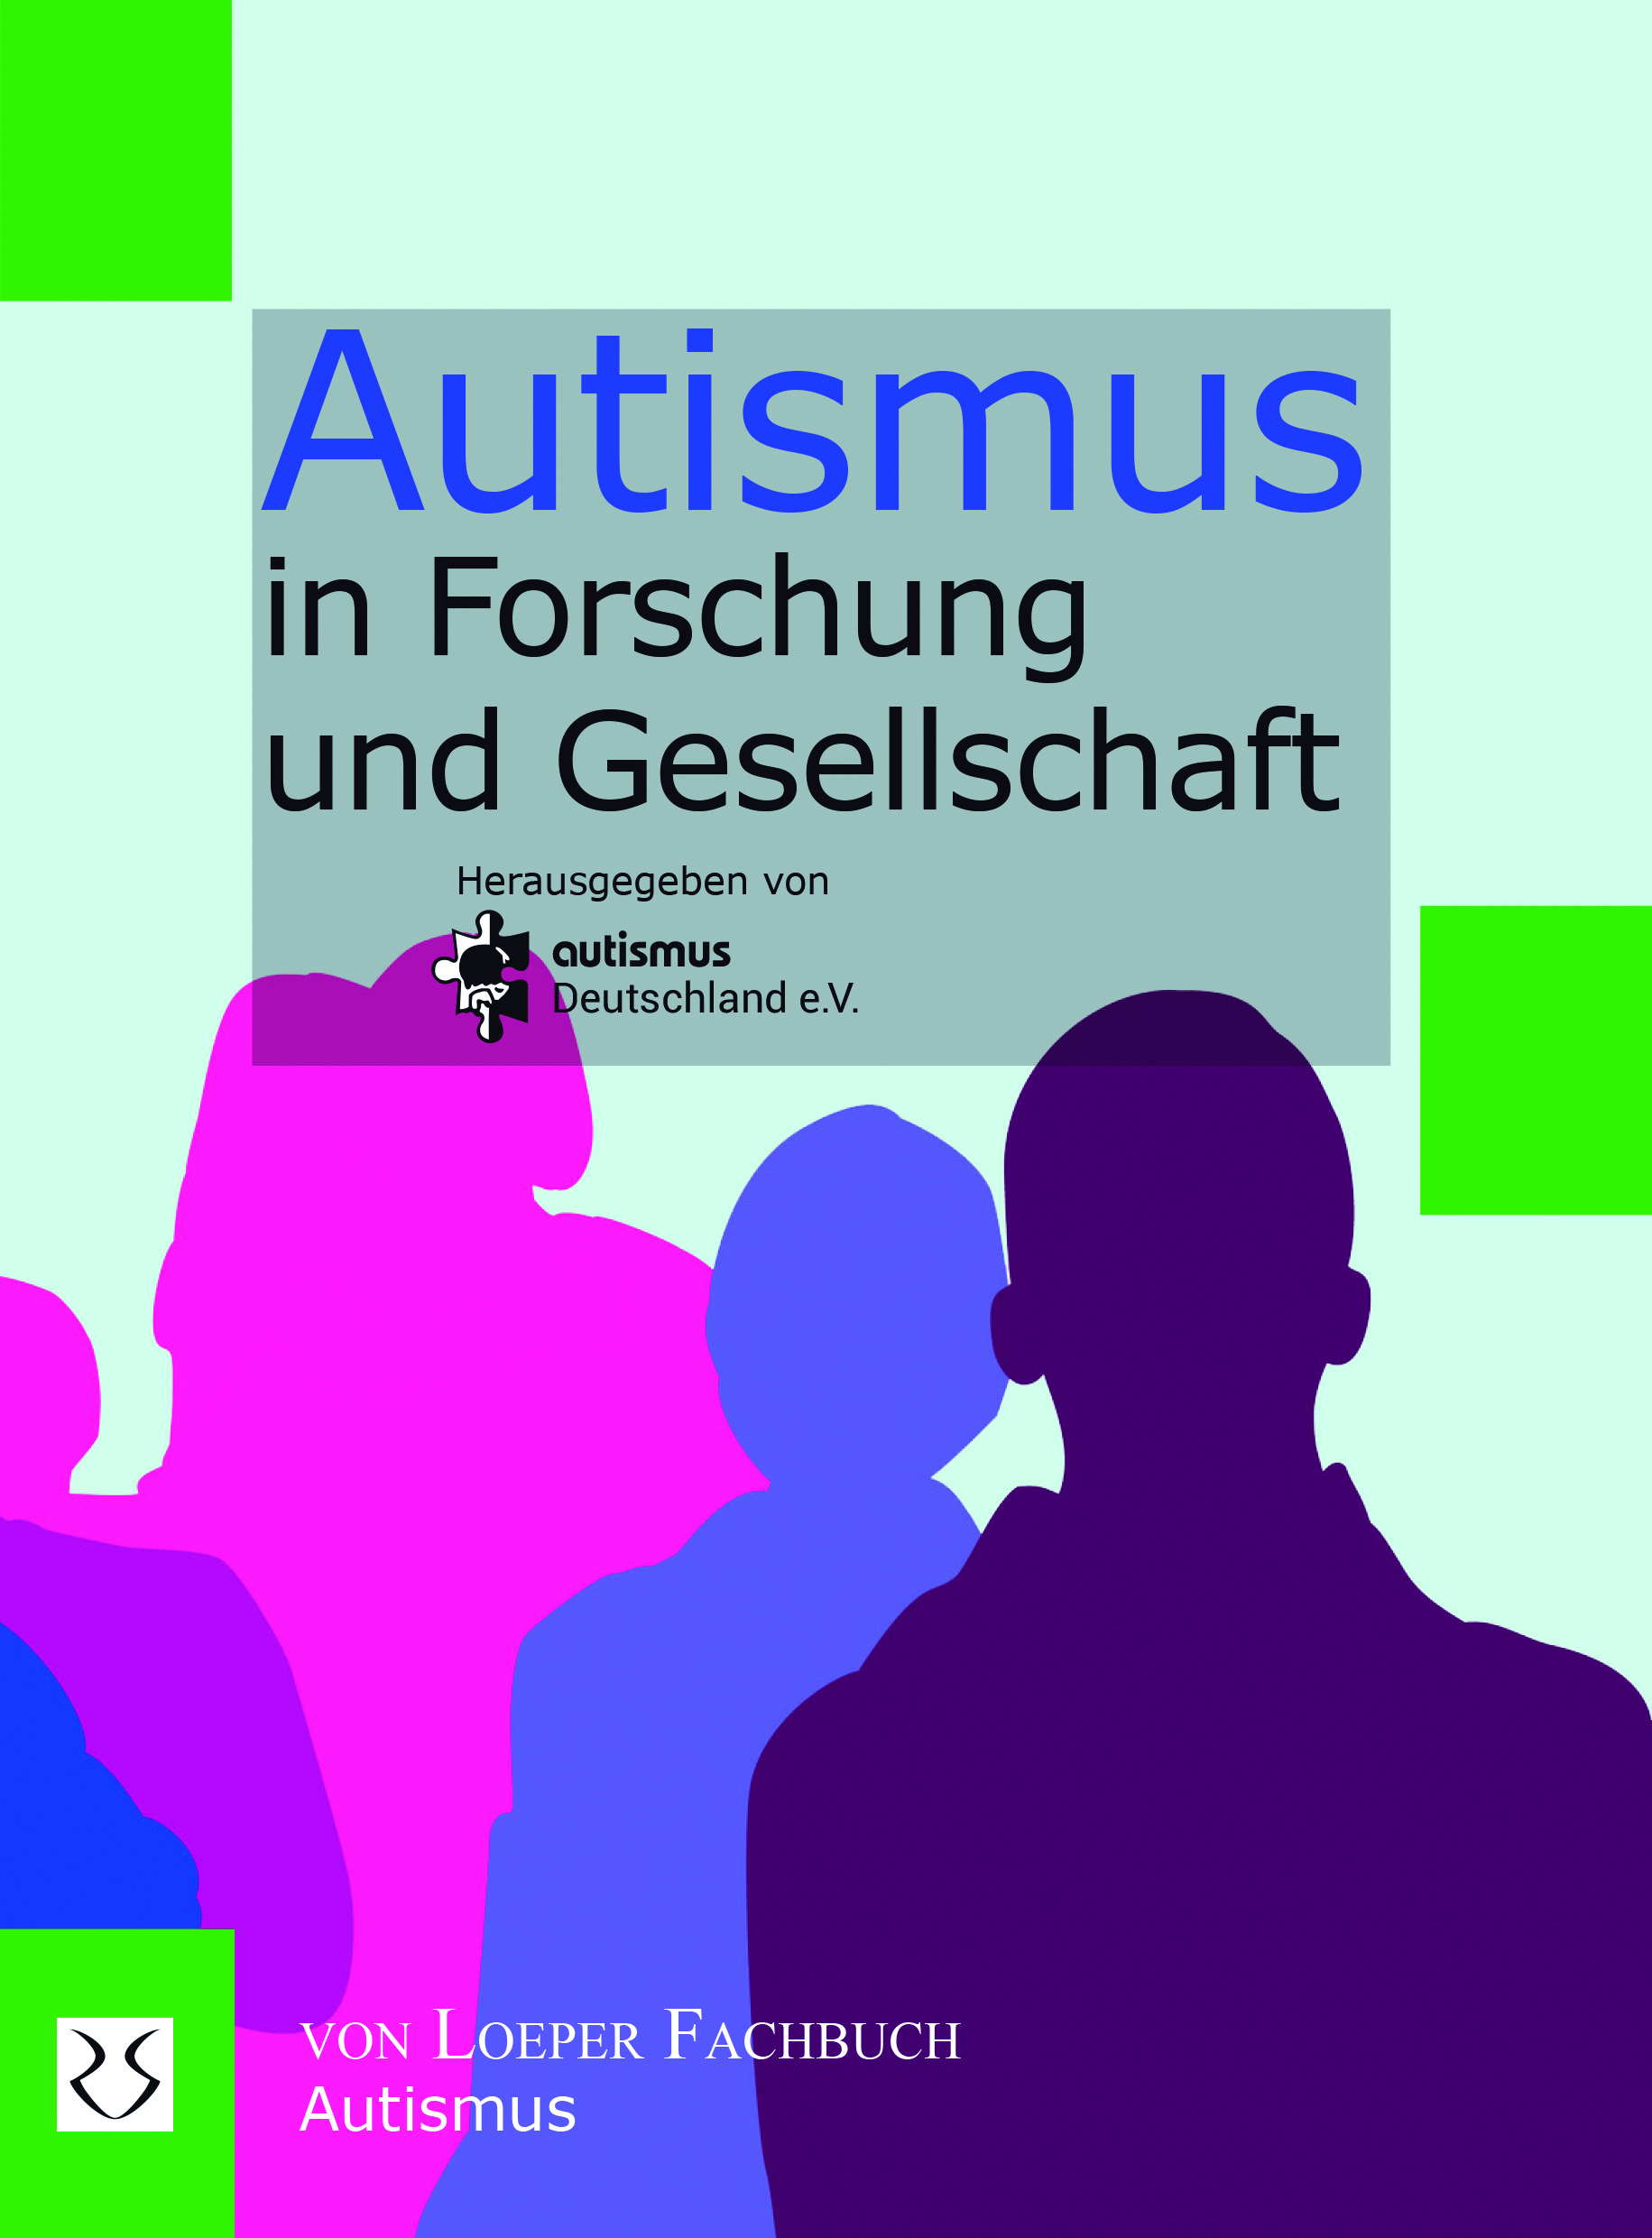 autismus Deutschland e.V. (Hrsg.): Autismus in Forschung und Gesellschaft, Autismus Spektrum, Besond. Bedarf